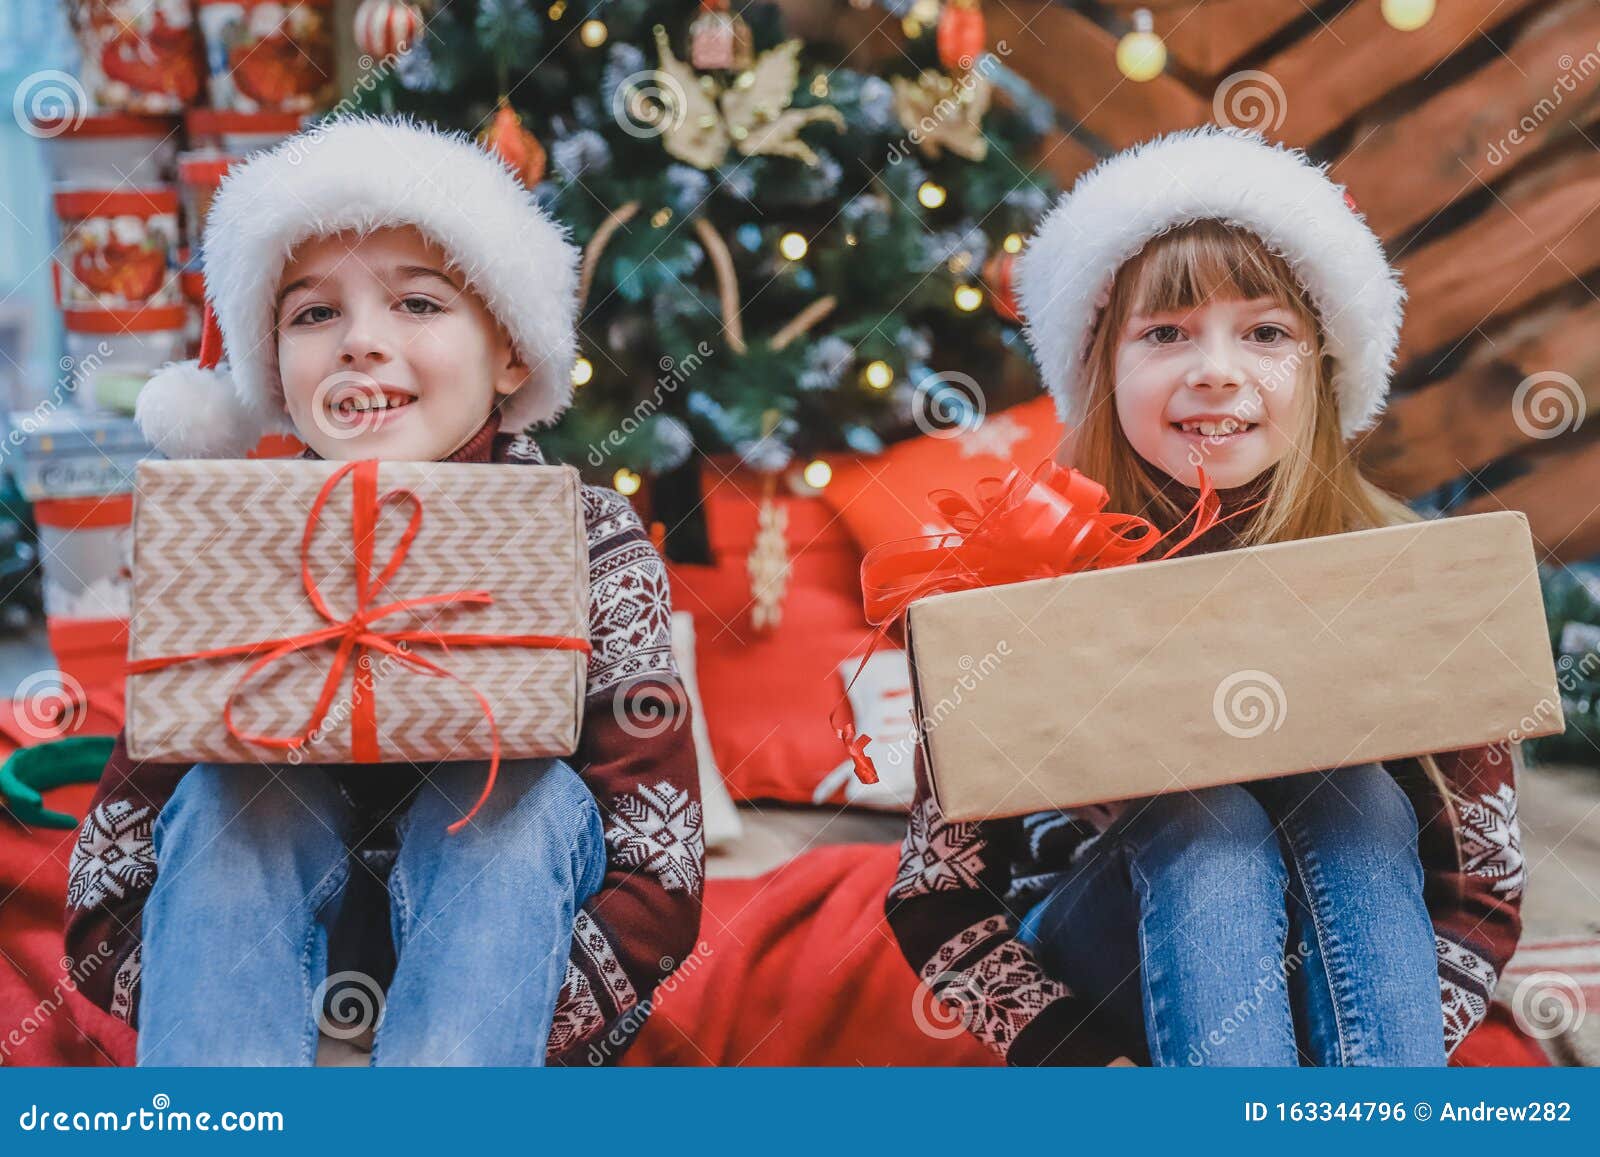 Fotografía De Primer Plano De Hijos Preparando Regalos De Navidad Para Padres Foto de archivo - Imagen de regalo, vacaciones: 163344796